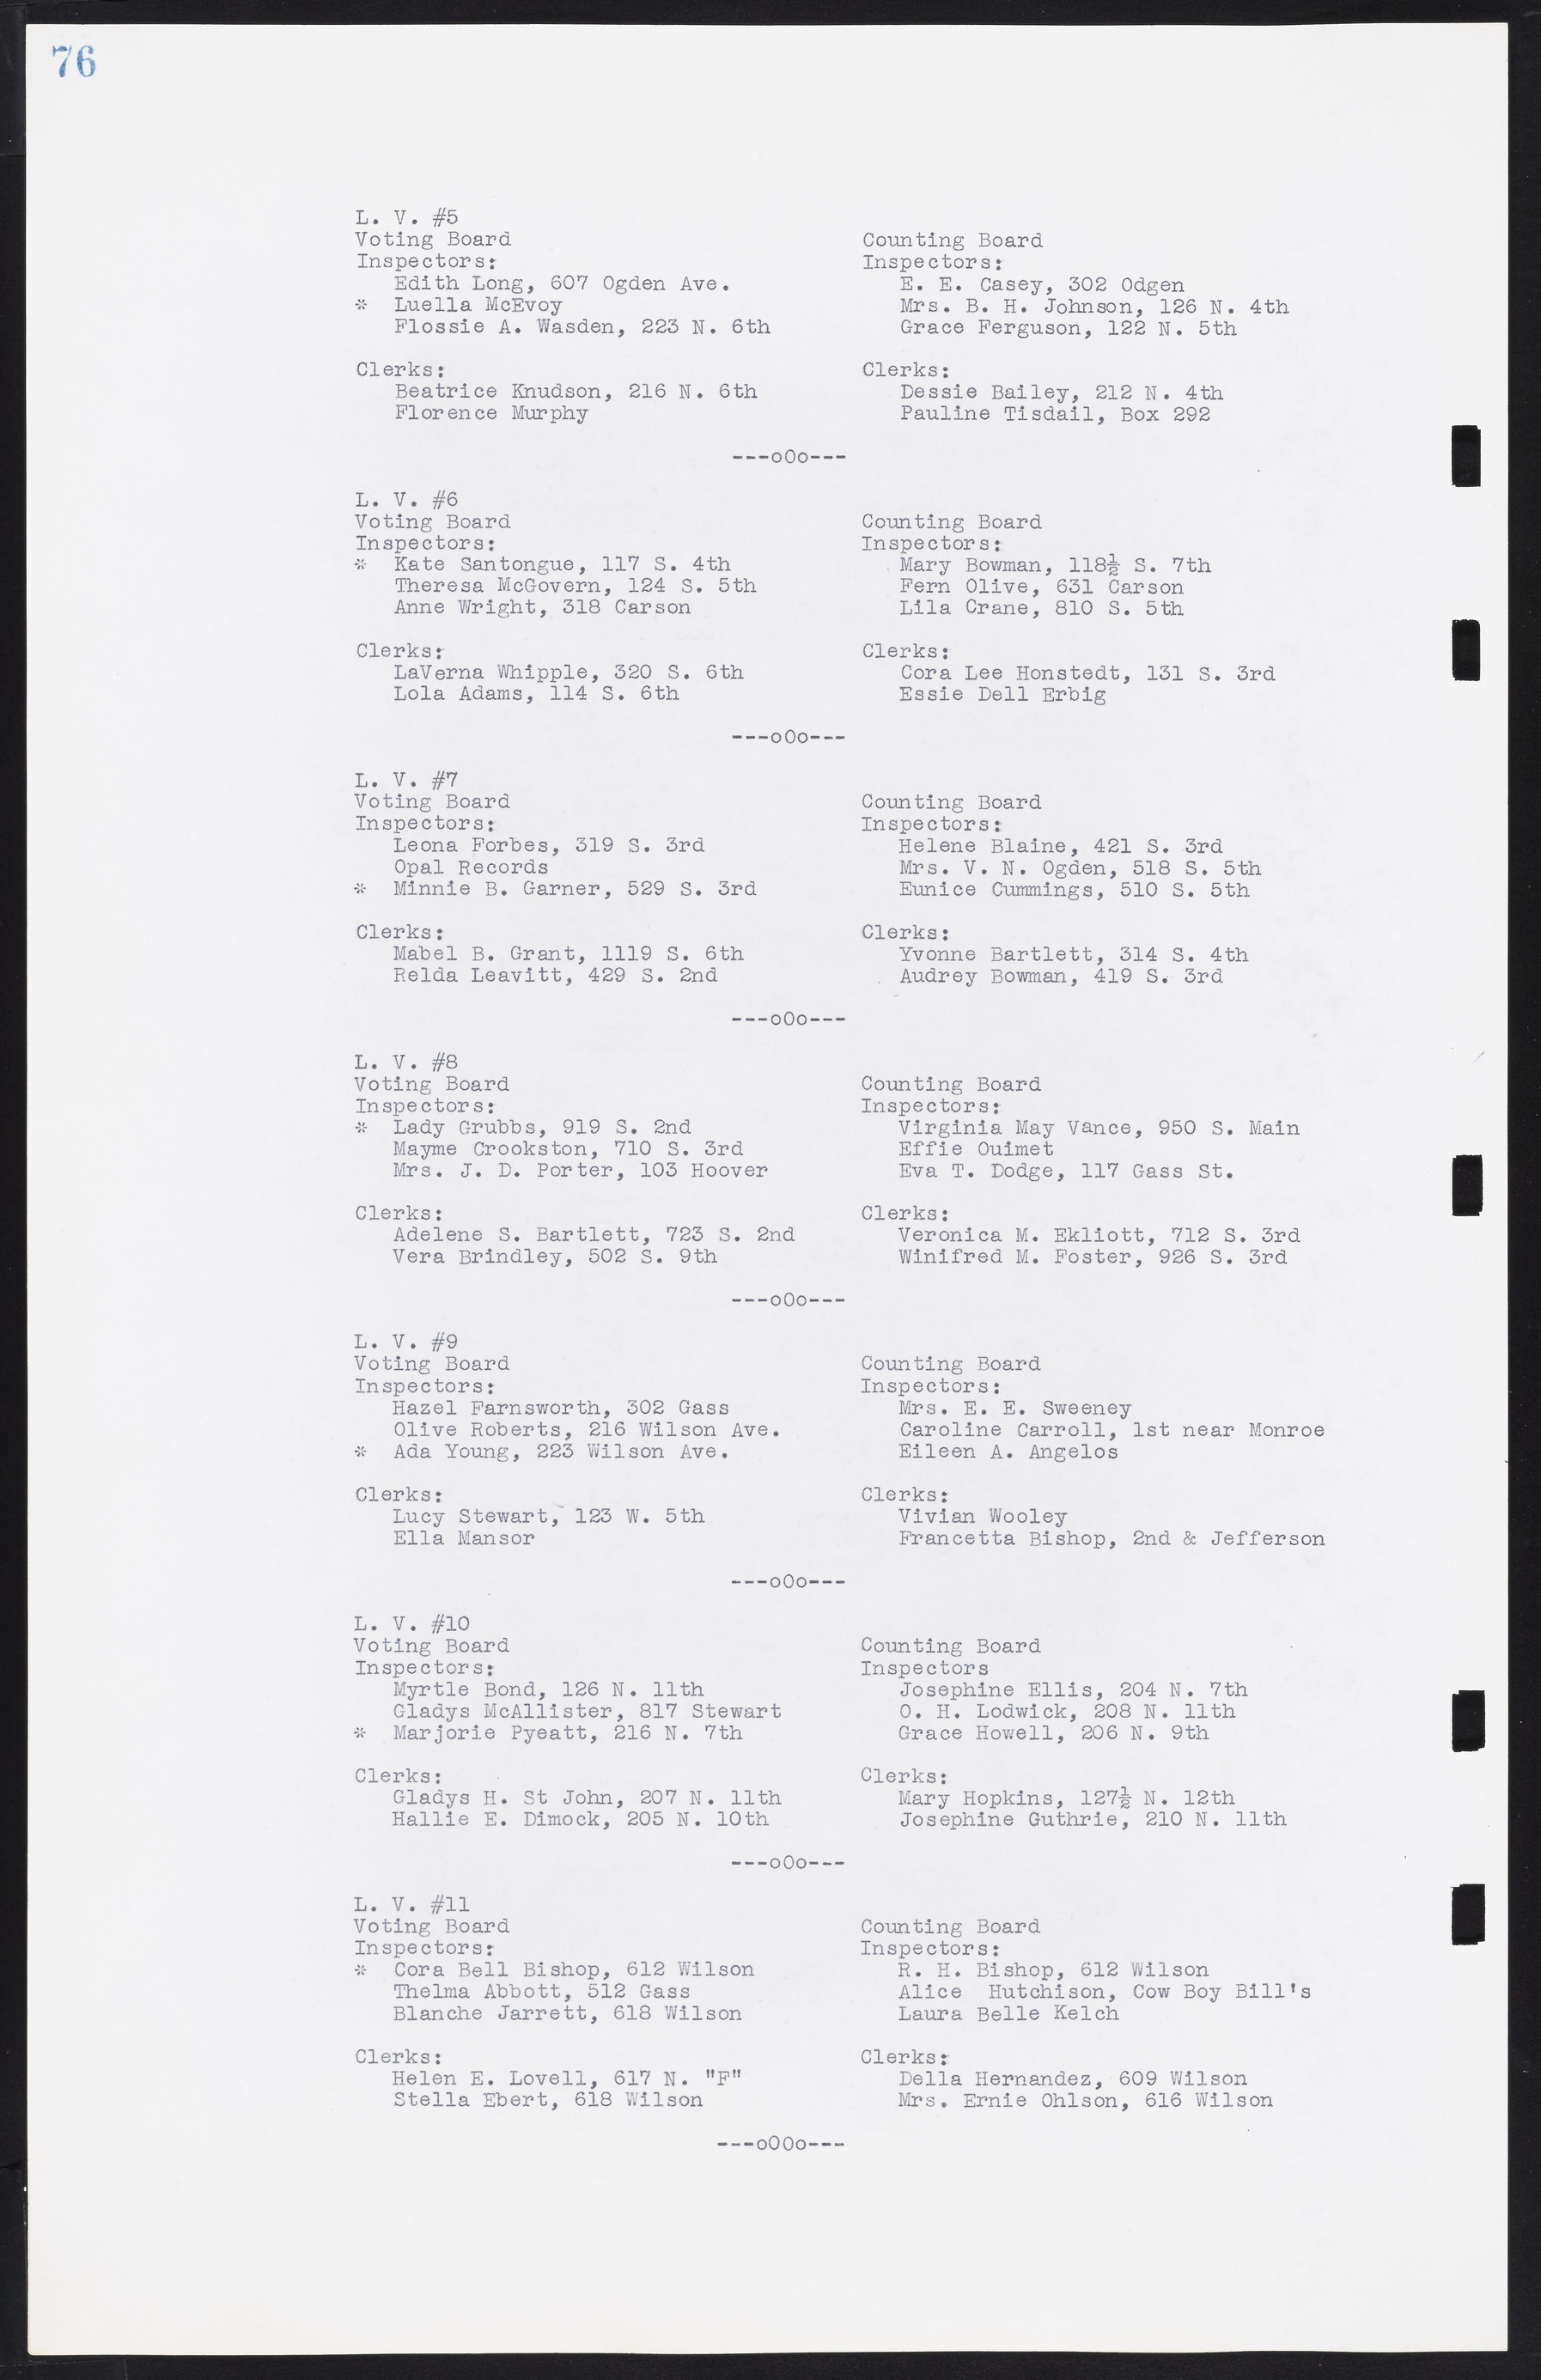 Las Vegas City Commission Minutes, August 11, 1942 to December 30, 1946, lvc000005-88